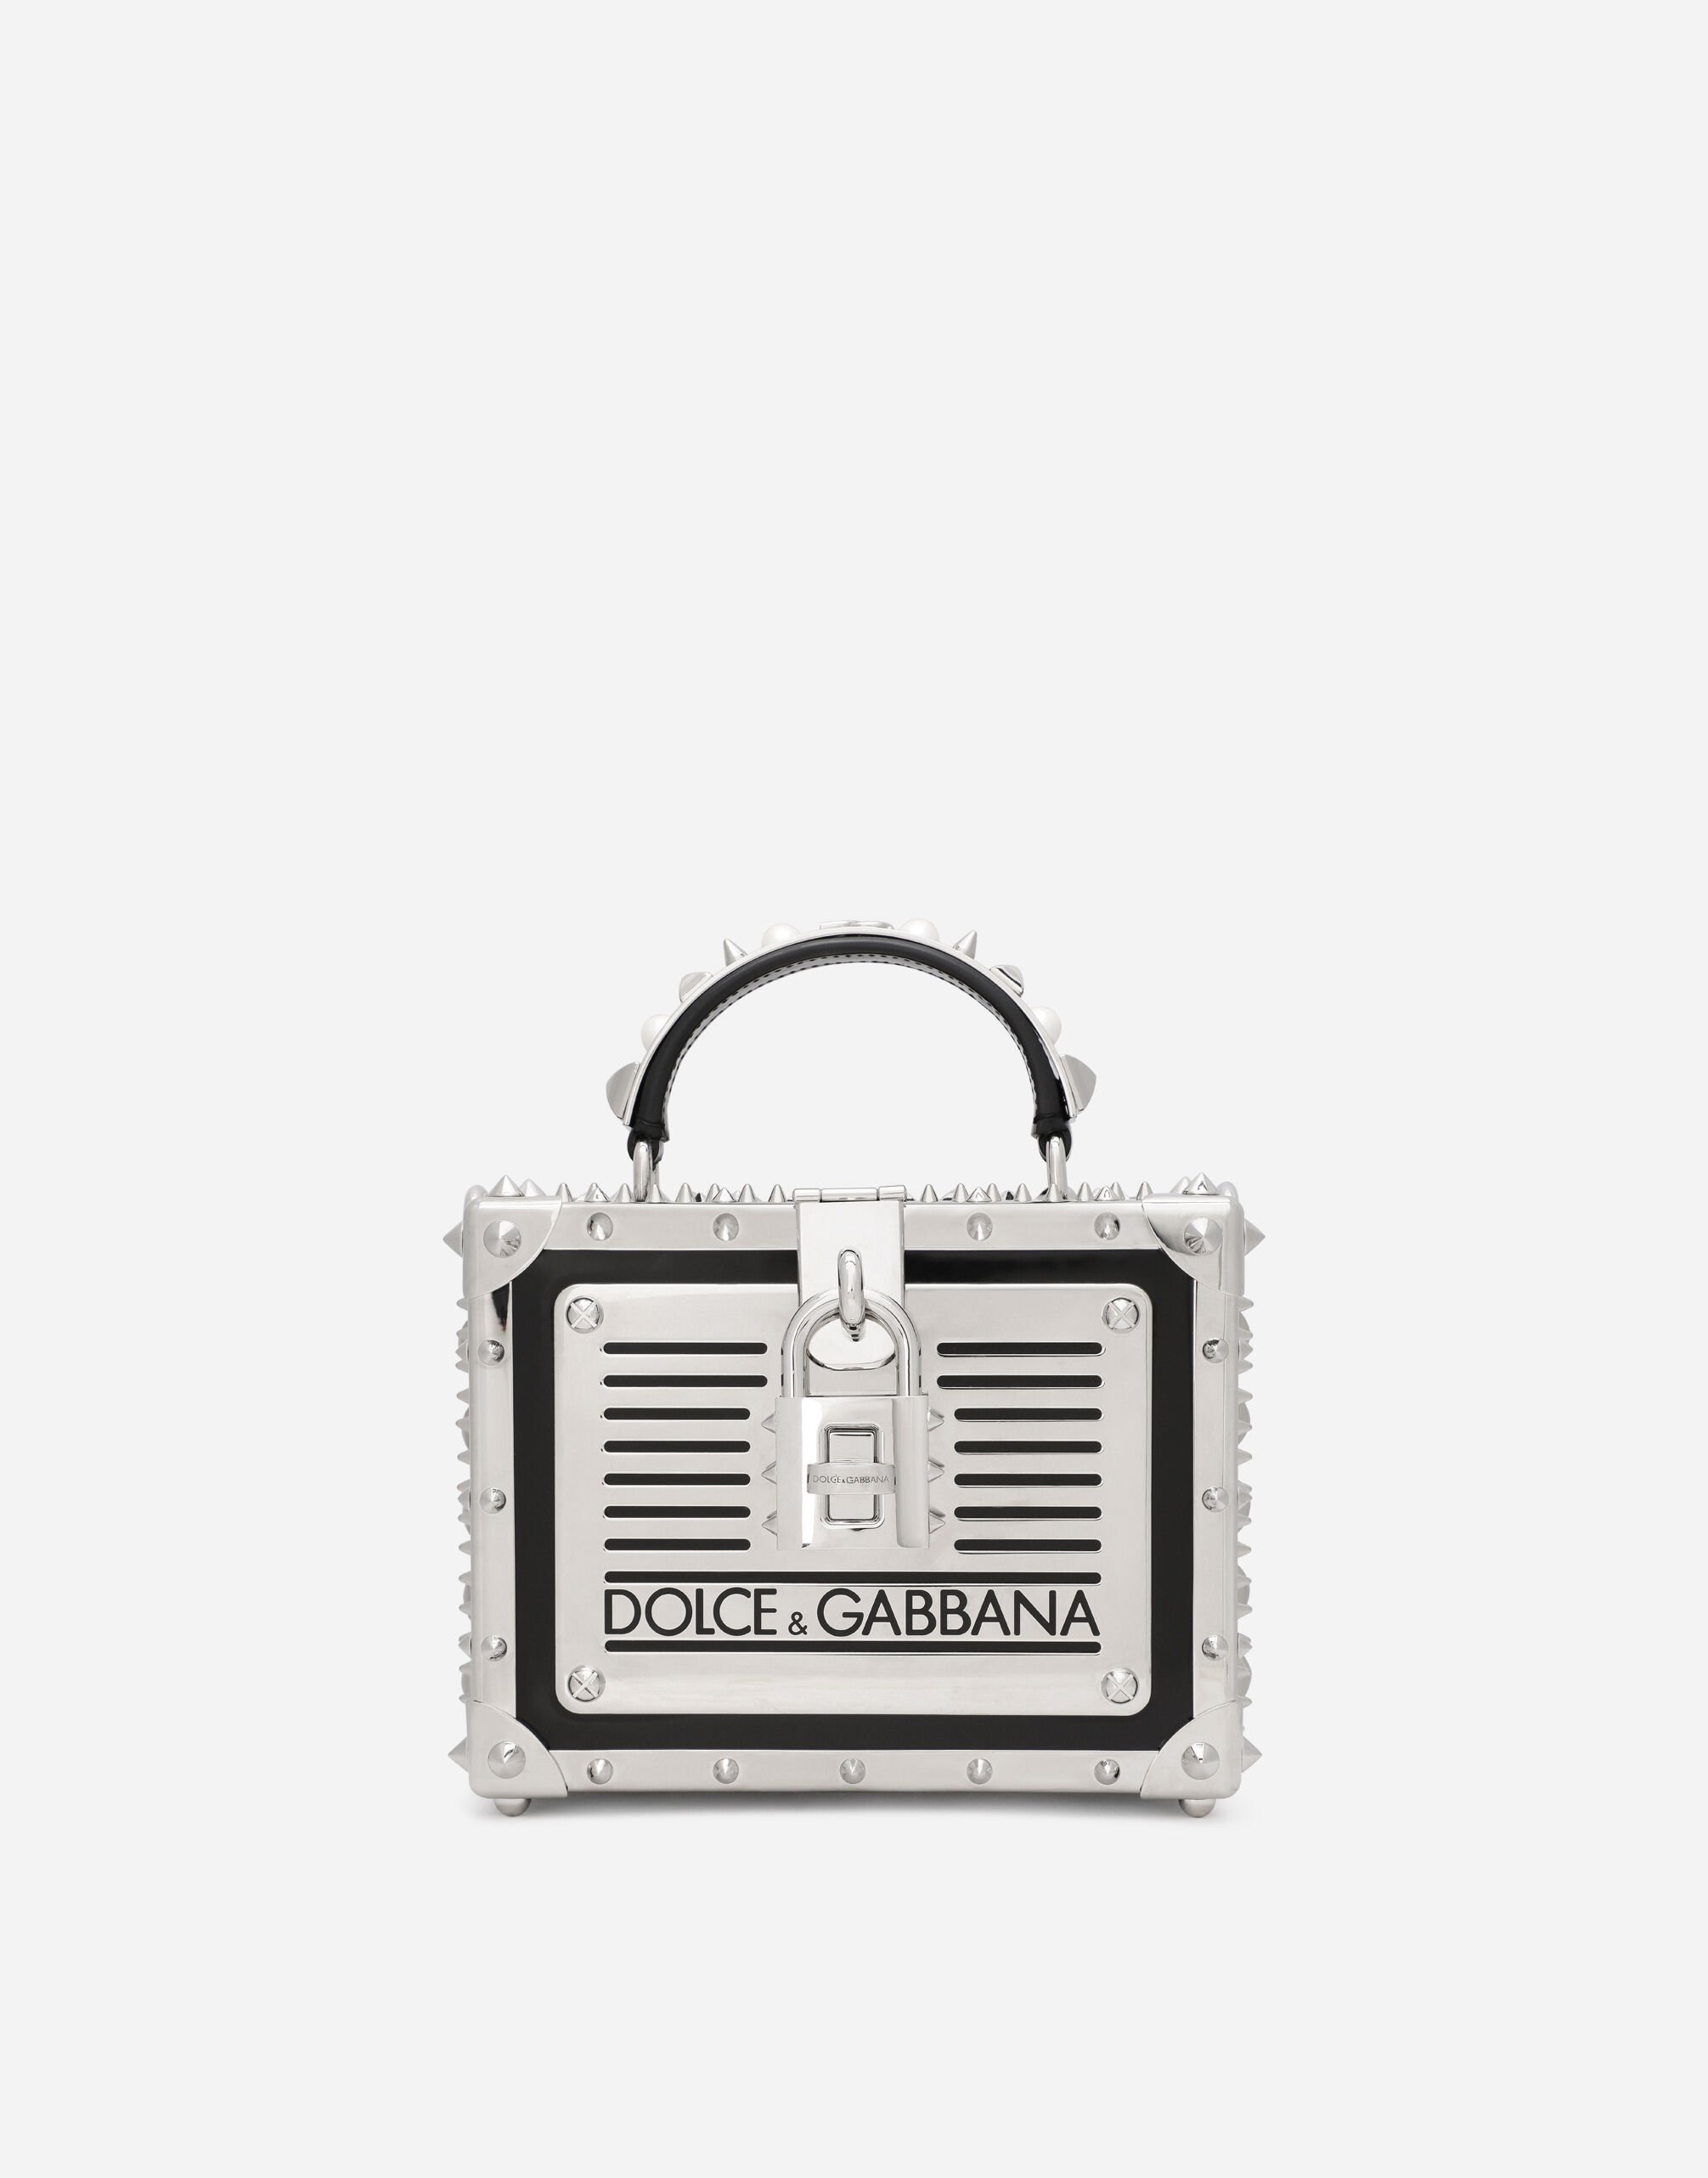 Dolce&Gabbana Polished calfskin Dolce Box bag with studs Gold BB7567AY828